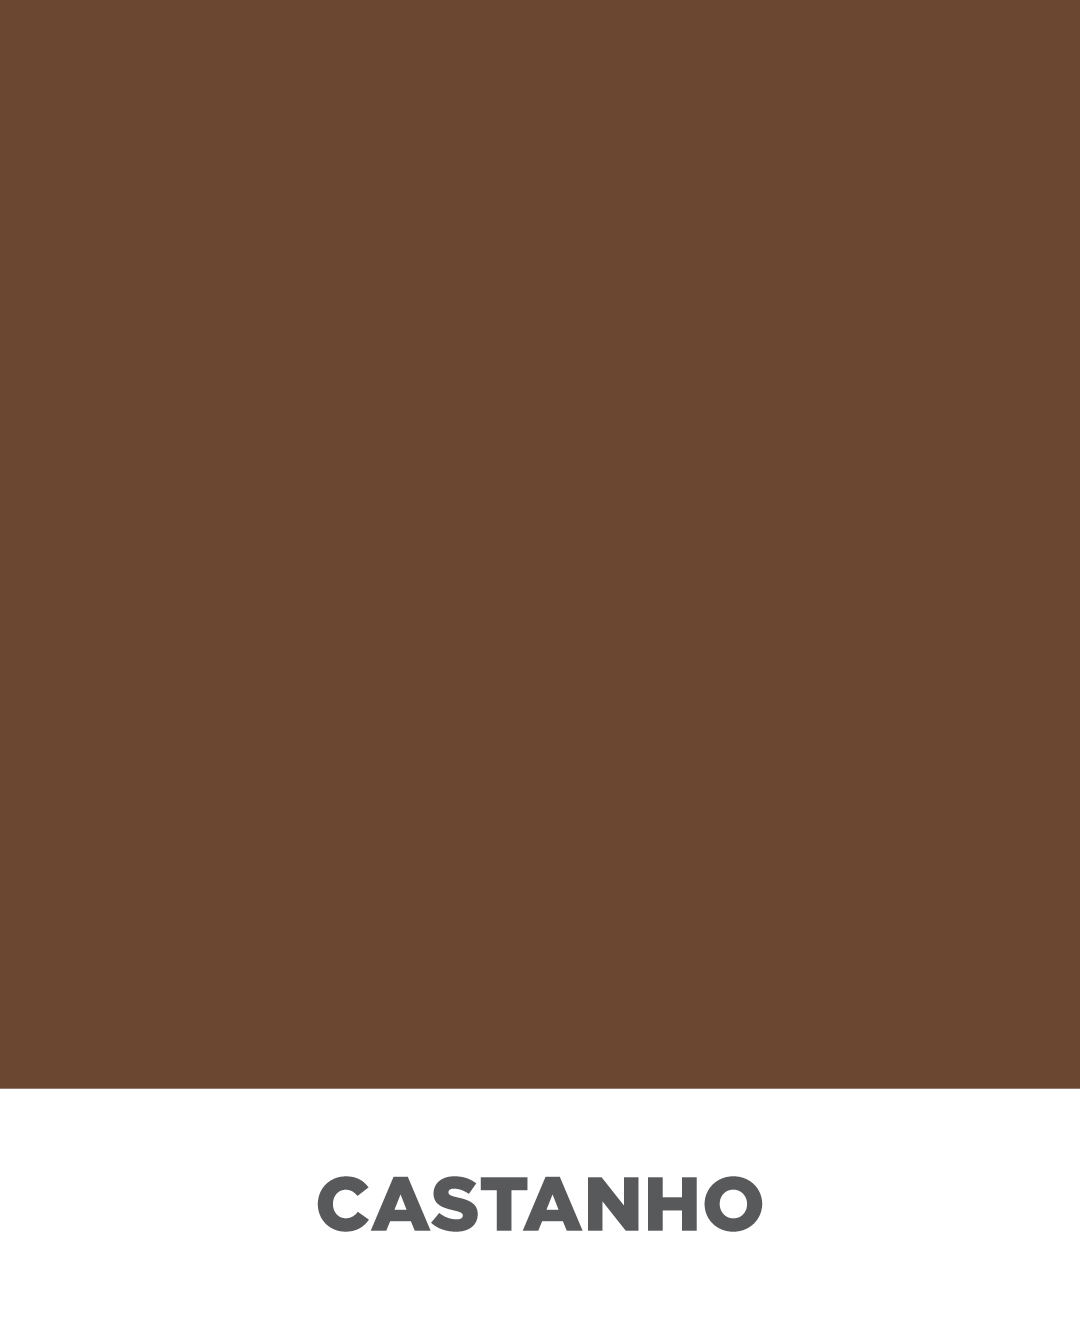 Castanho